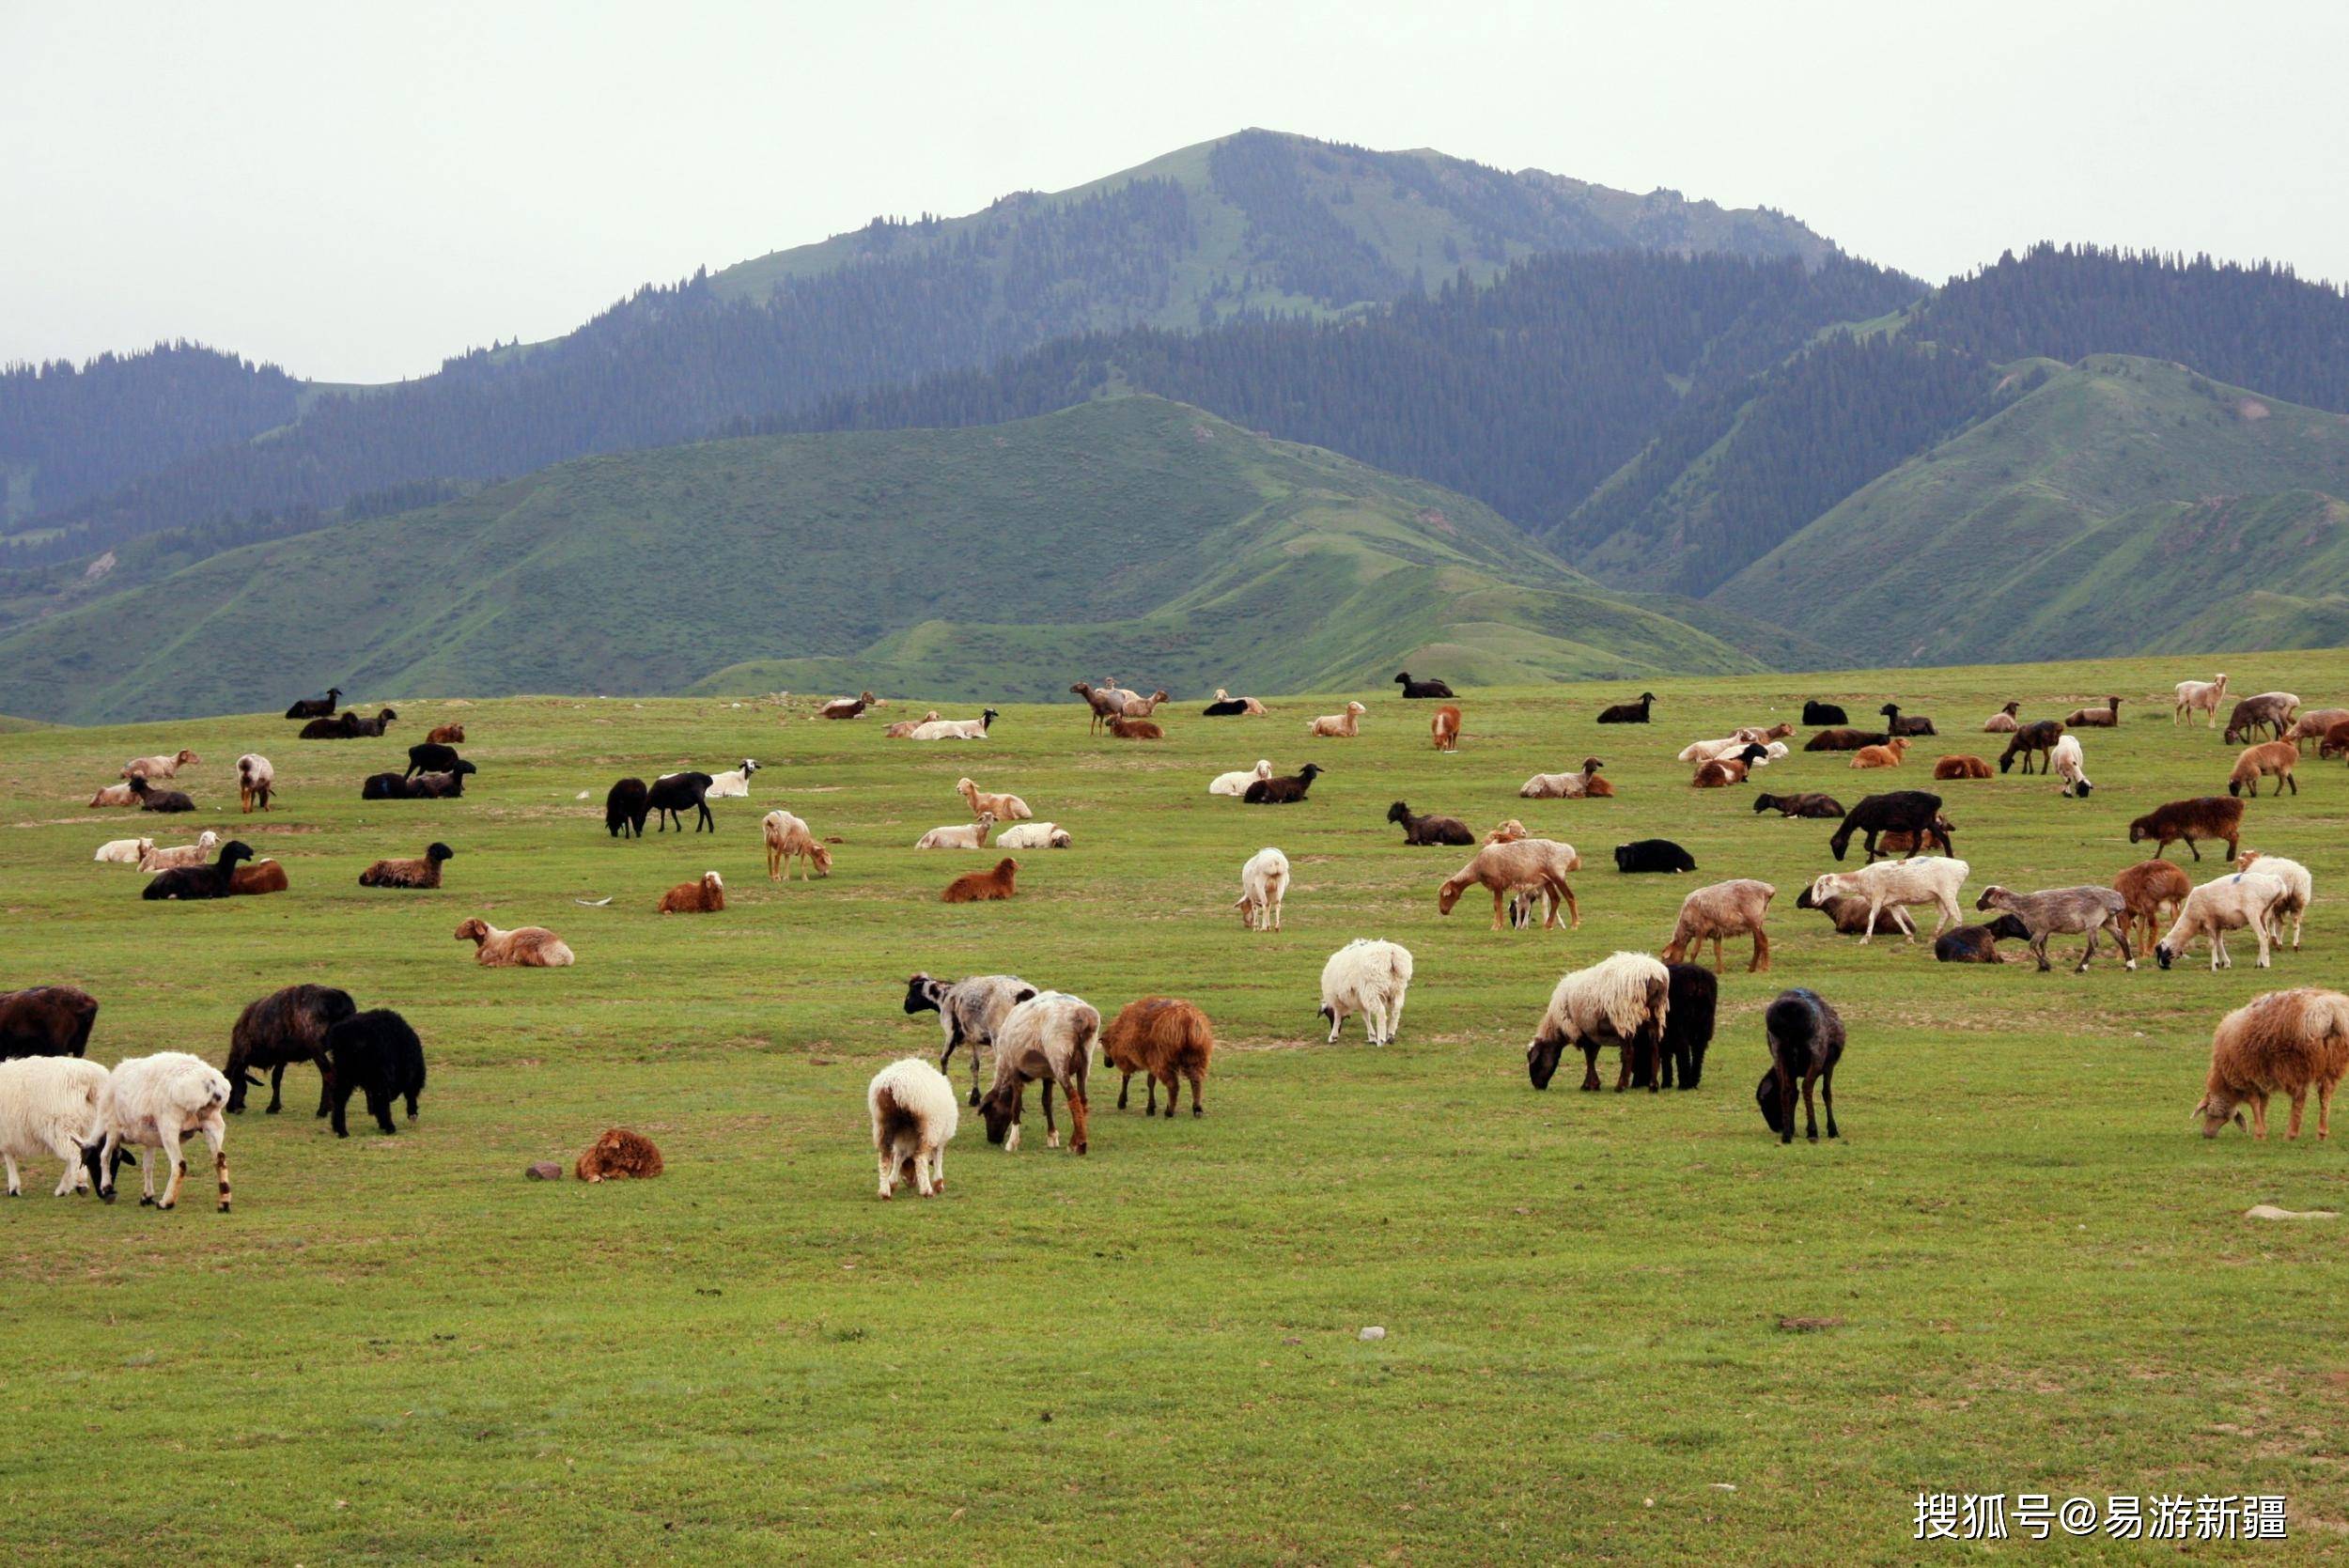 绿水青山丨新疆察布查尔:乌孙山下草儿绿 牛羊成群马儿跑